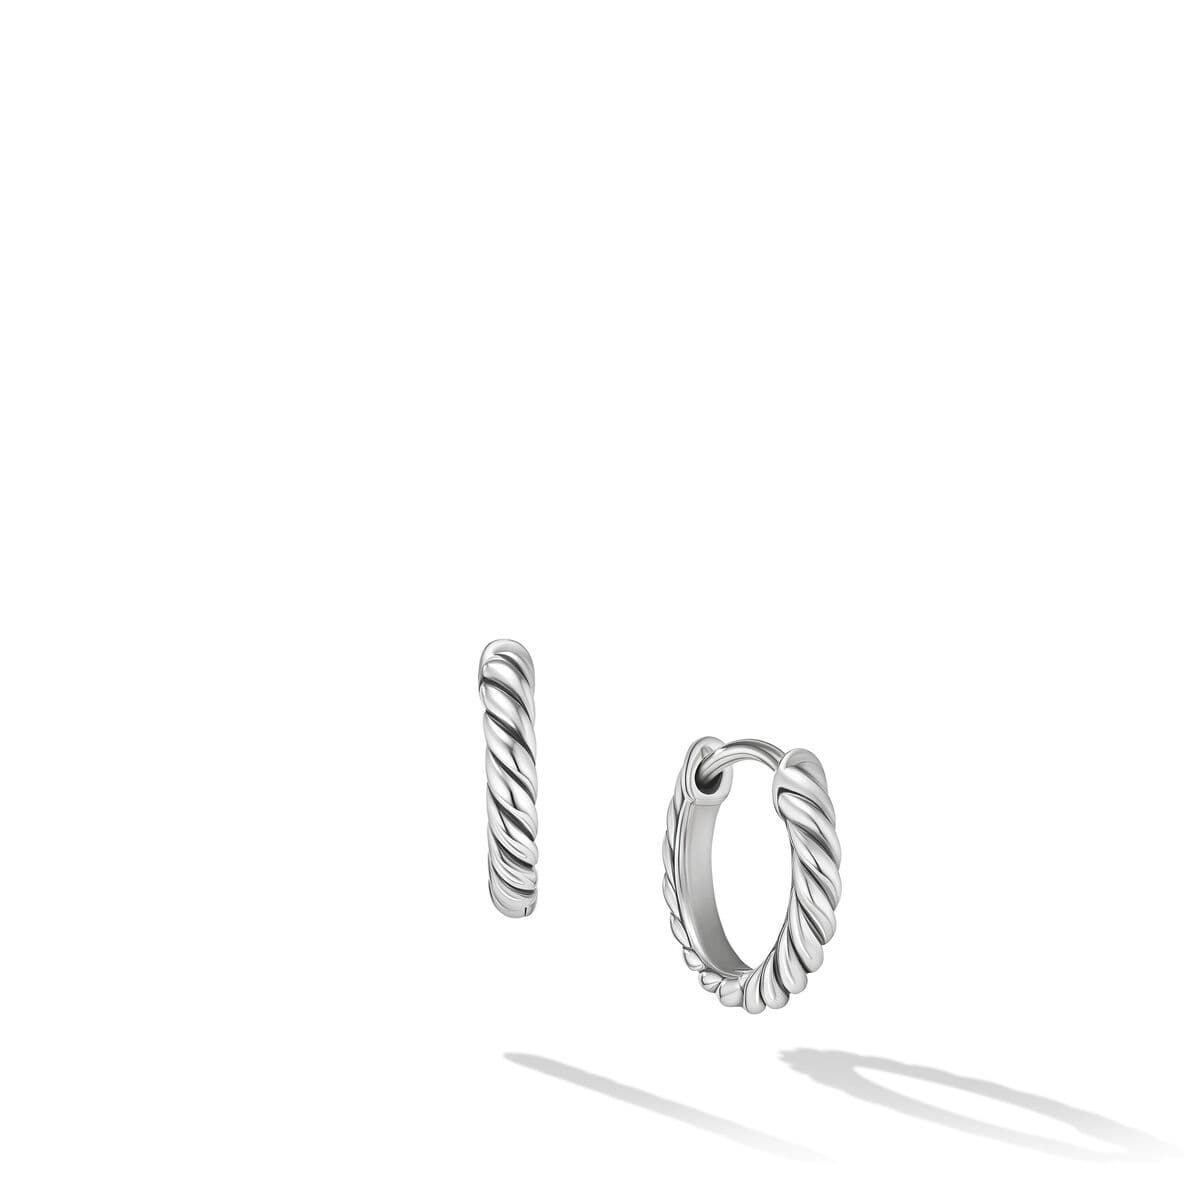 David Yurman Sculpted Cable Huggie Hoop Earrings in Sterling Silver 0